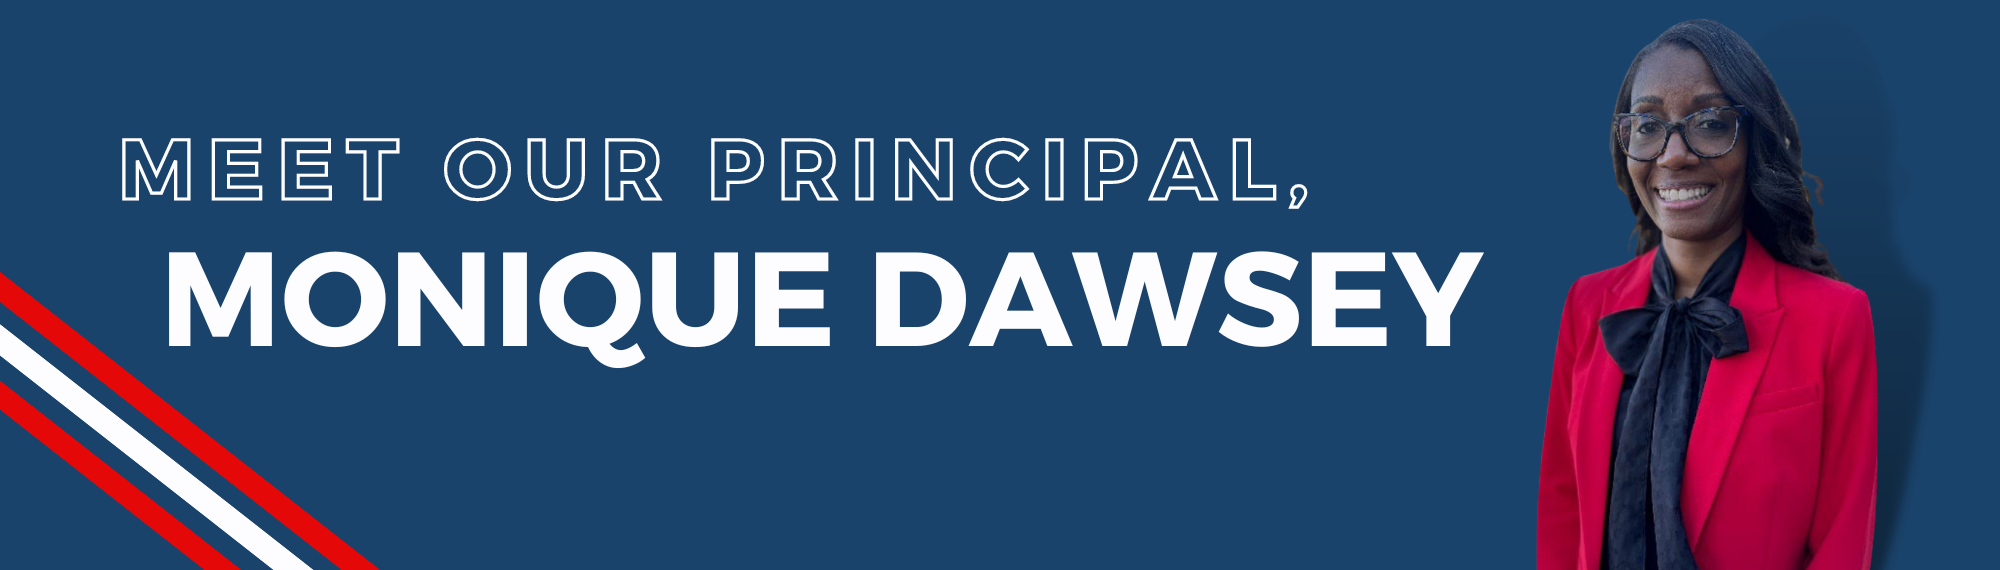 Meet our Principal Monique Dawsey